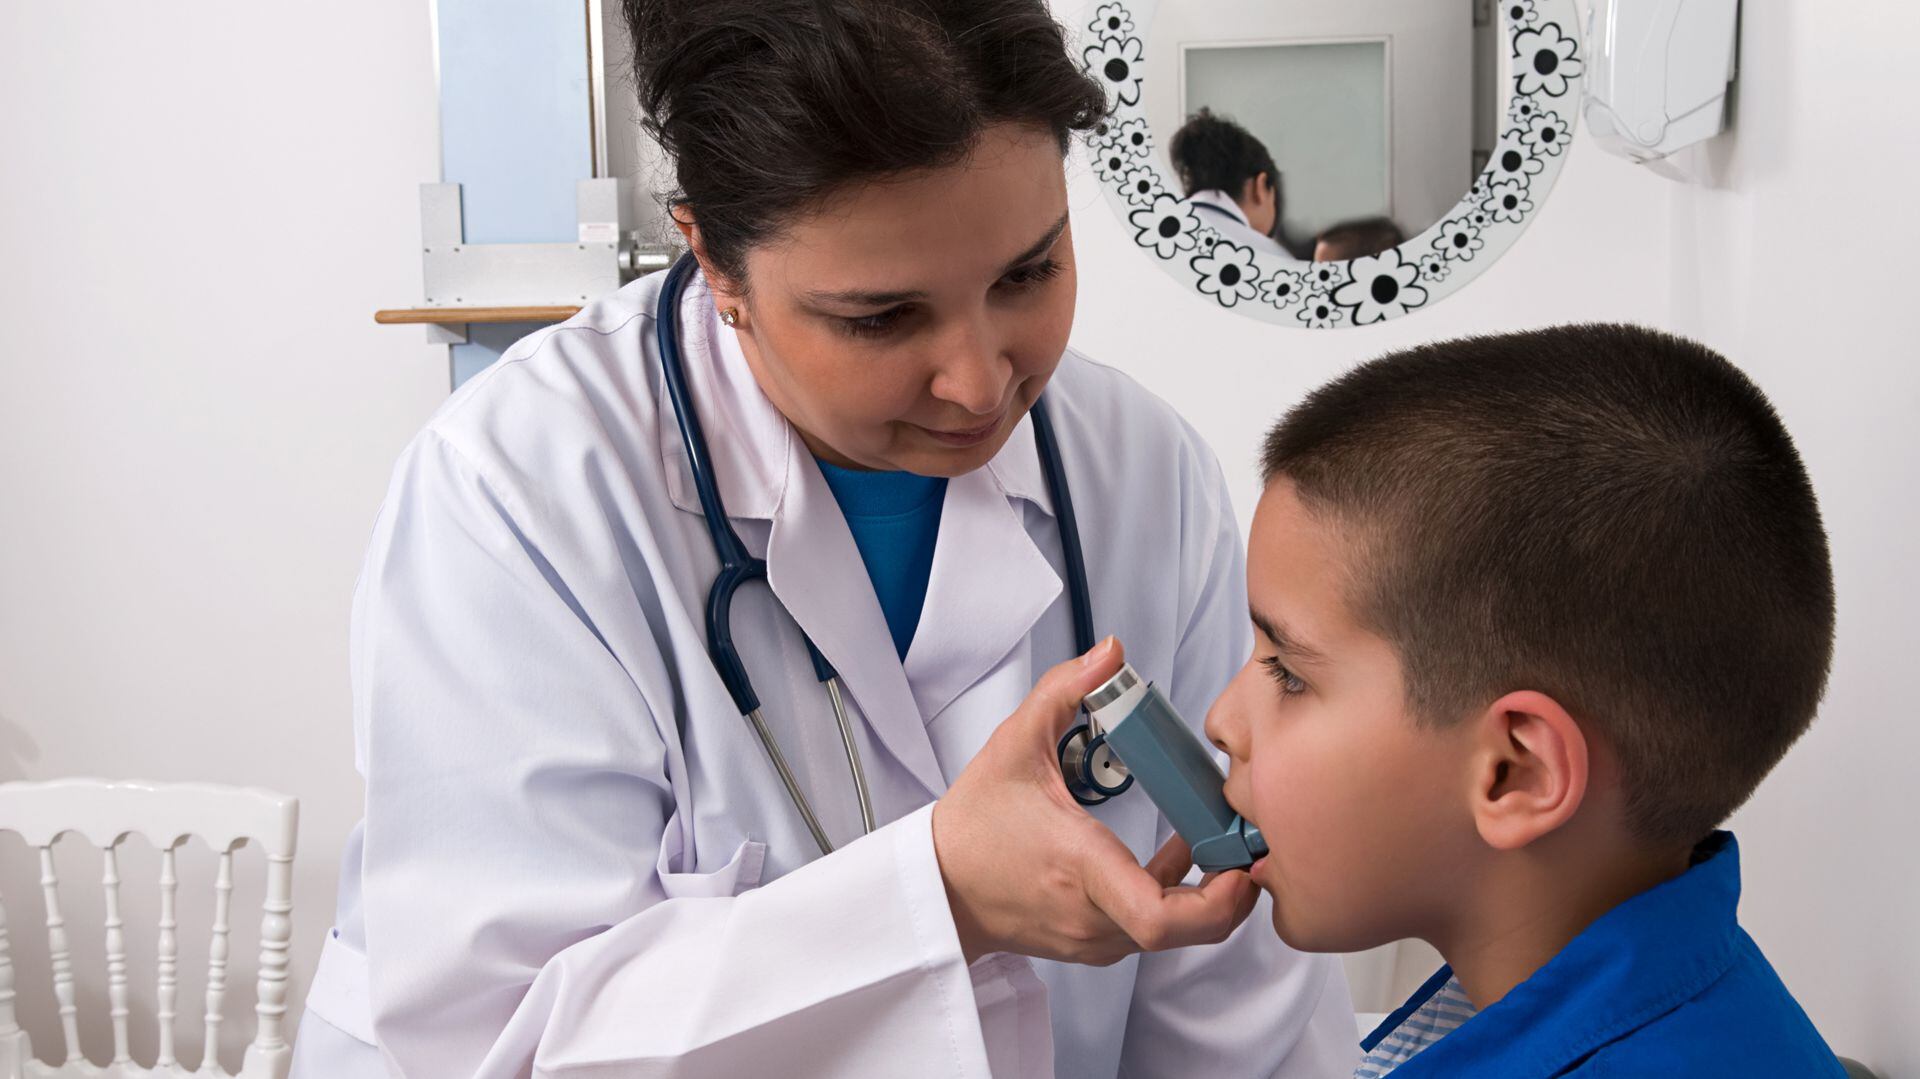 Educación y participación de la familia en el tratamiento del asma, factores clave en el manejo exitoso de la enfermedad (iStock)